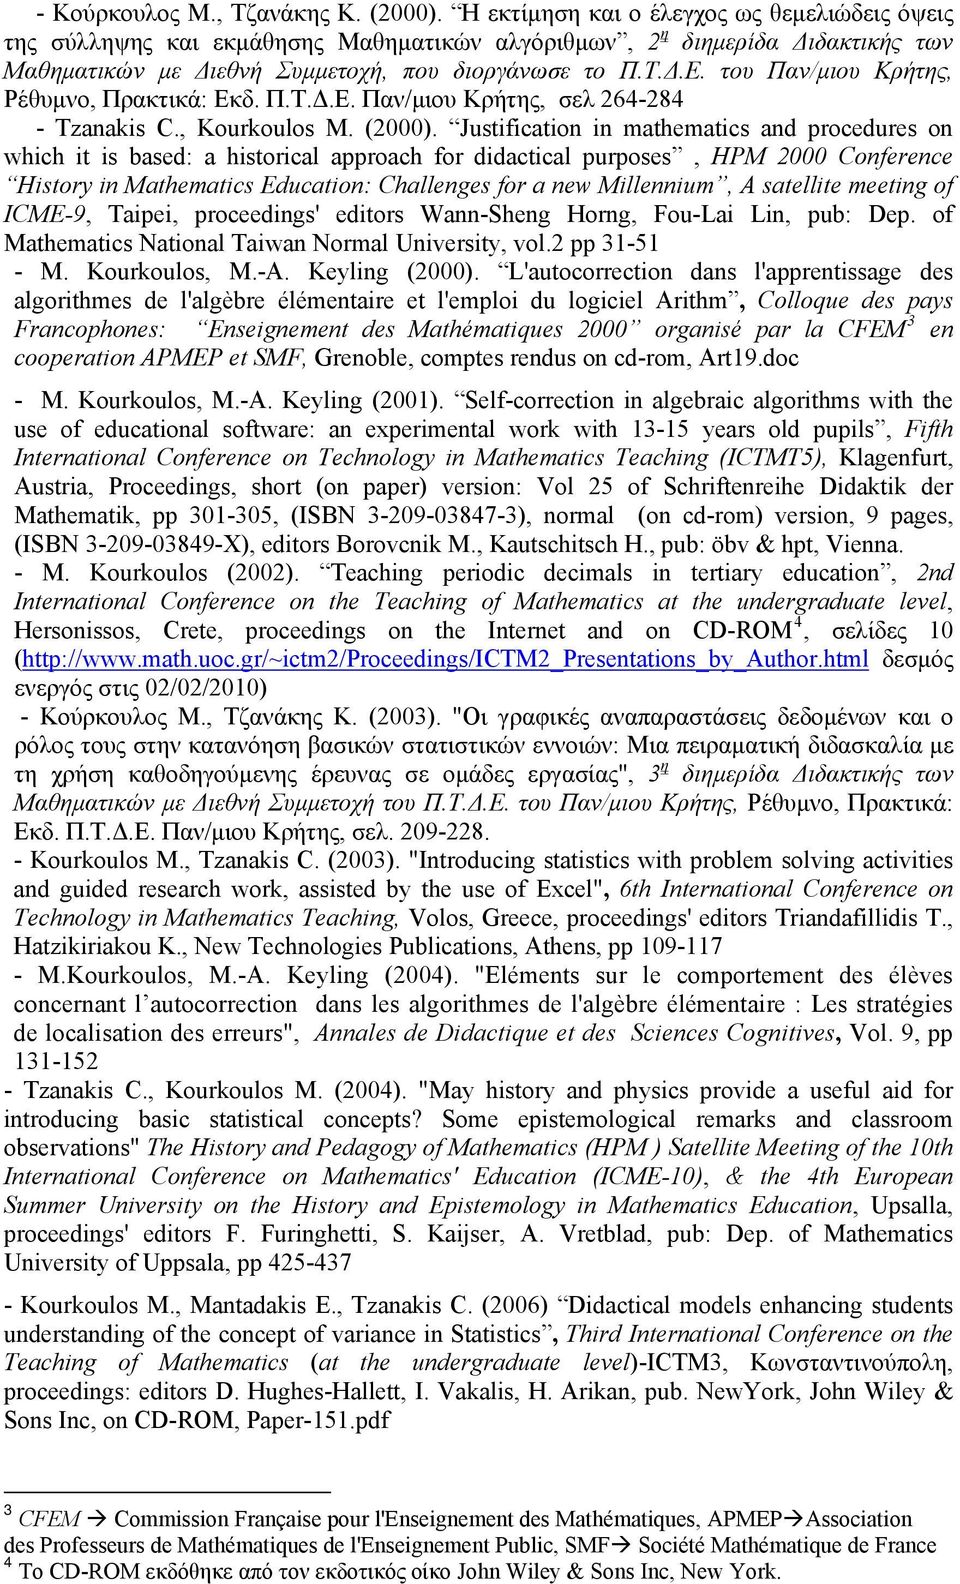 του Παν/μιου Κρήτης, Ρέθυμνο, Πρακτικά: Εκδ. Π.Τ.Δ.Ε. Παν/μιου Κρήτης, σελ 264-284 - Tzanakis C., Kourkoulos M. (2000).